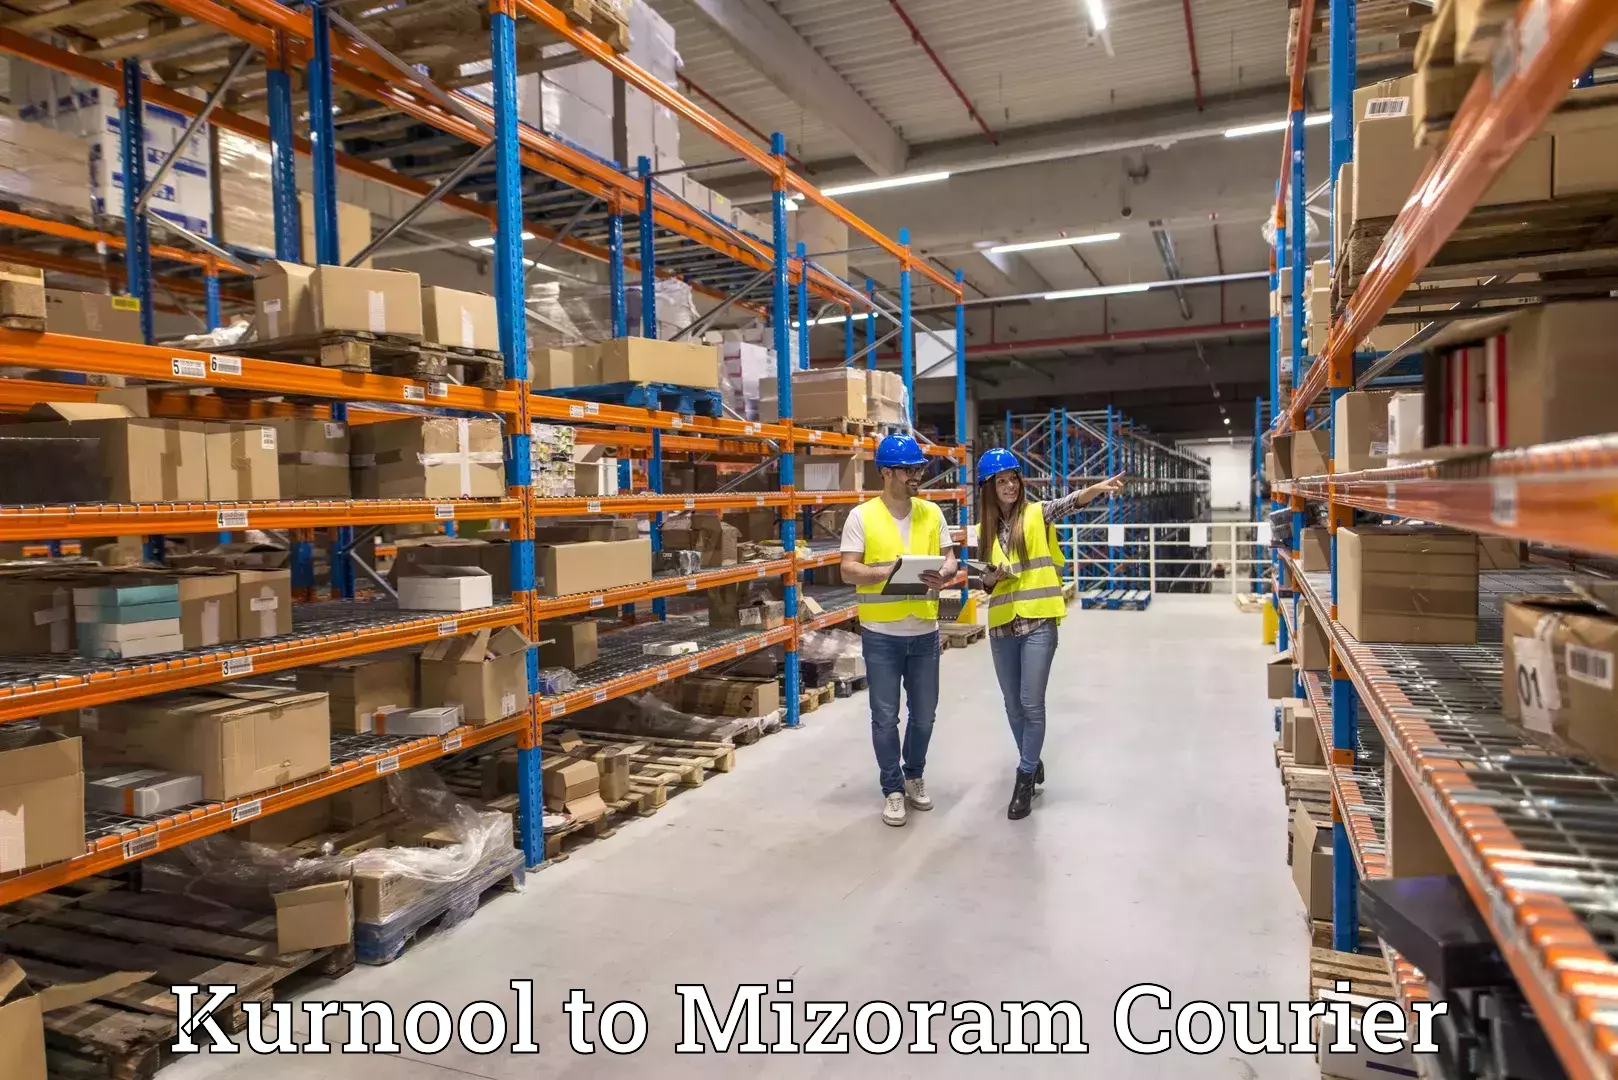 Express courier facilities Kurnool to Mizoram